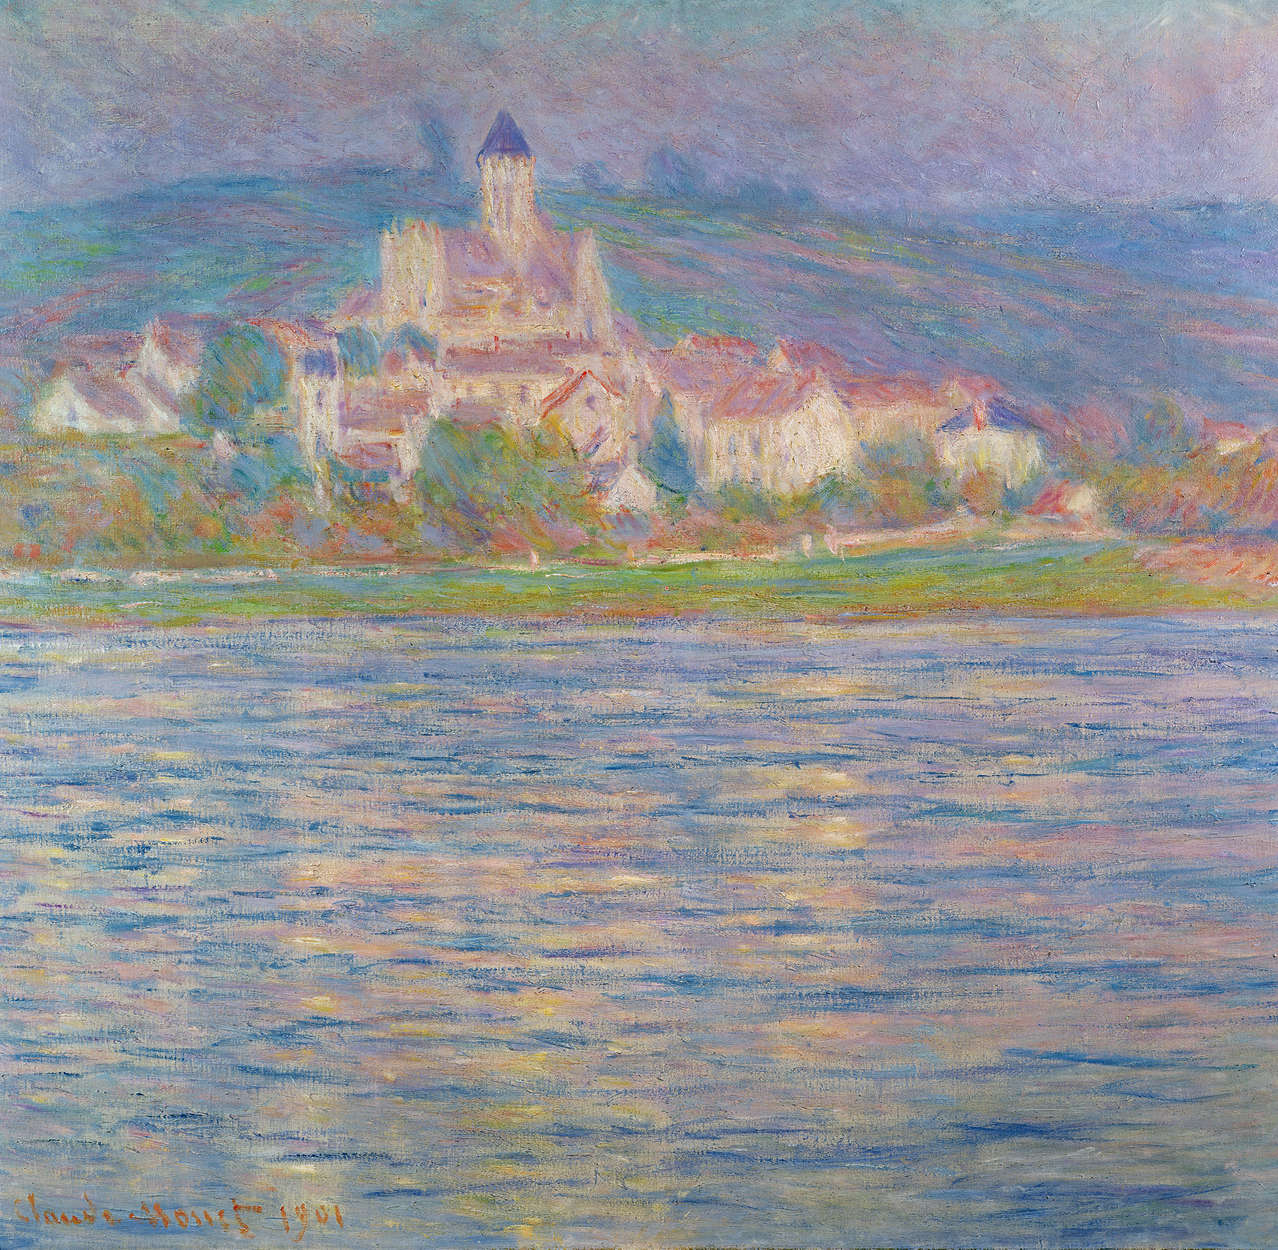             Fototapete "Ansicht Vétheuil" von Claude Monet
        